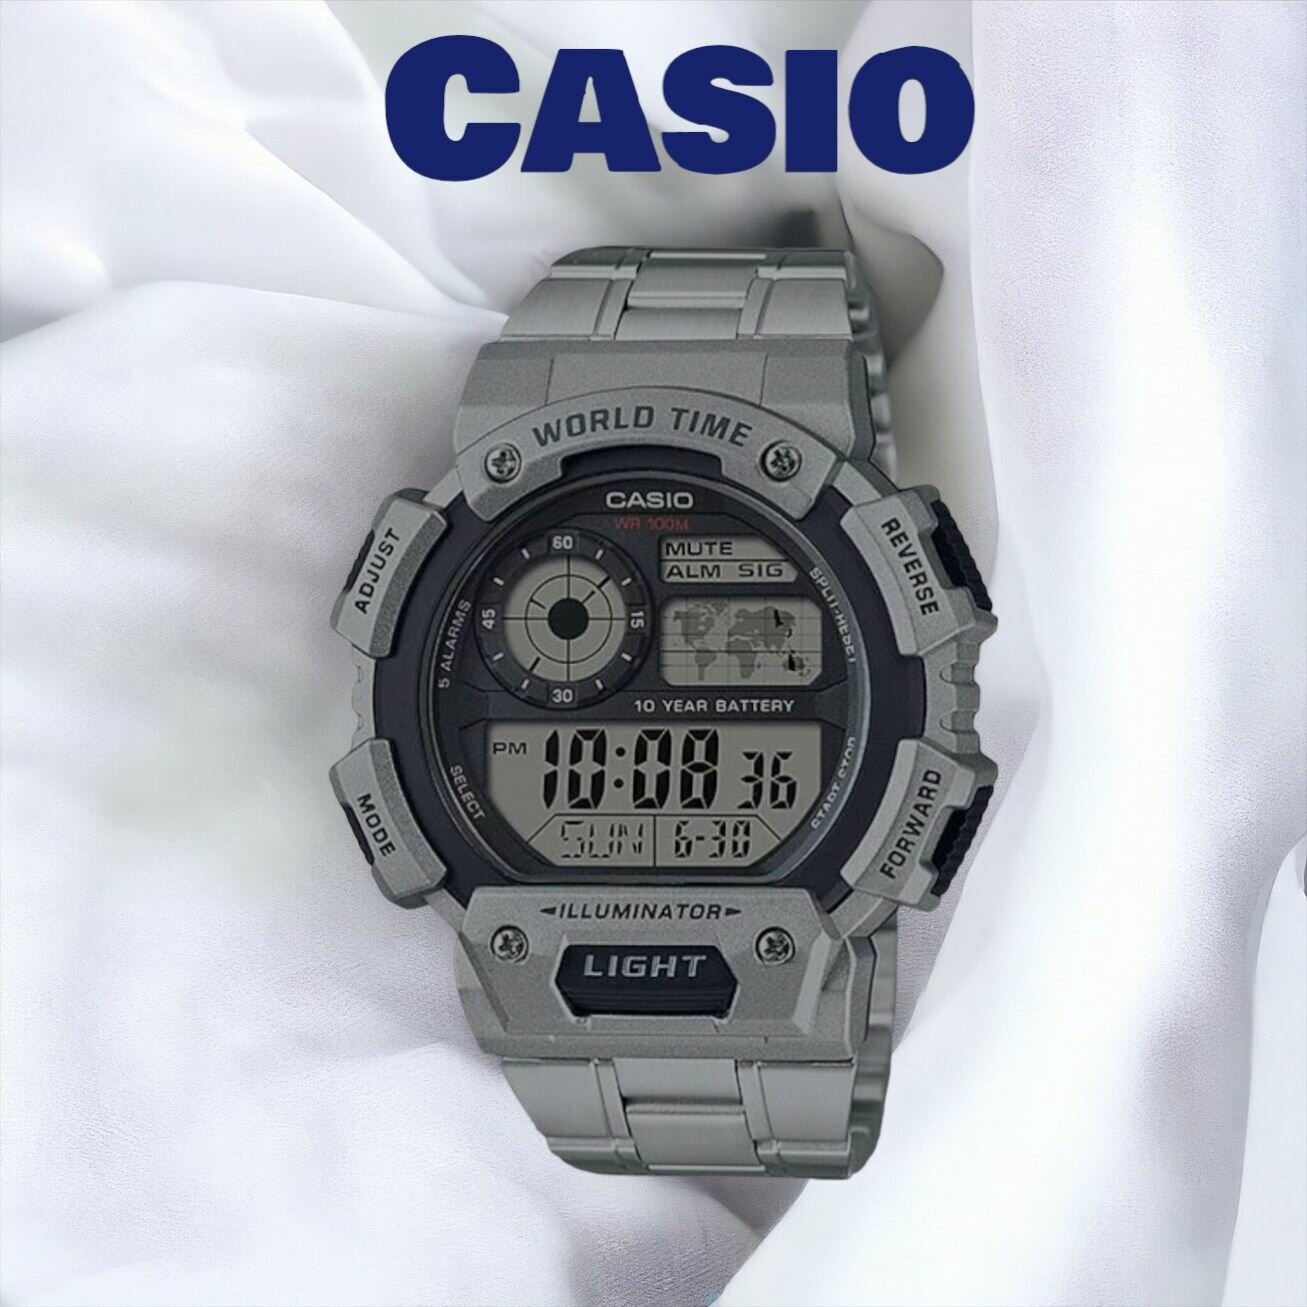 Наручные часы CASIO AE-1400WHD-1A